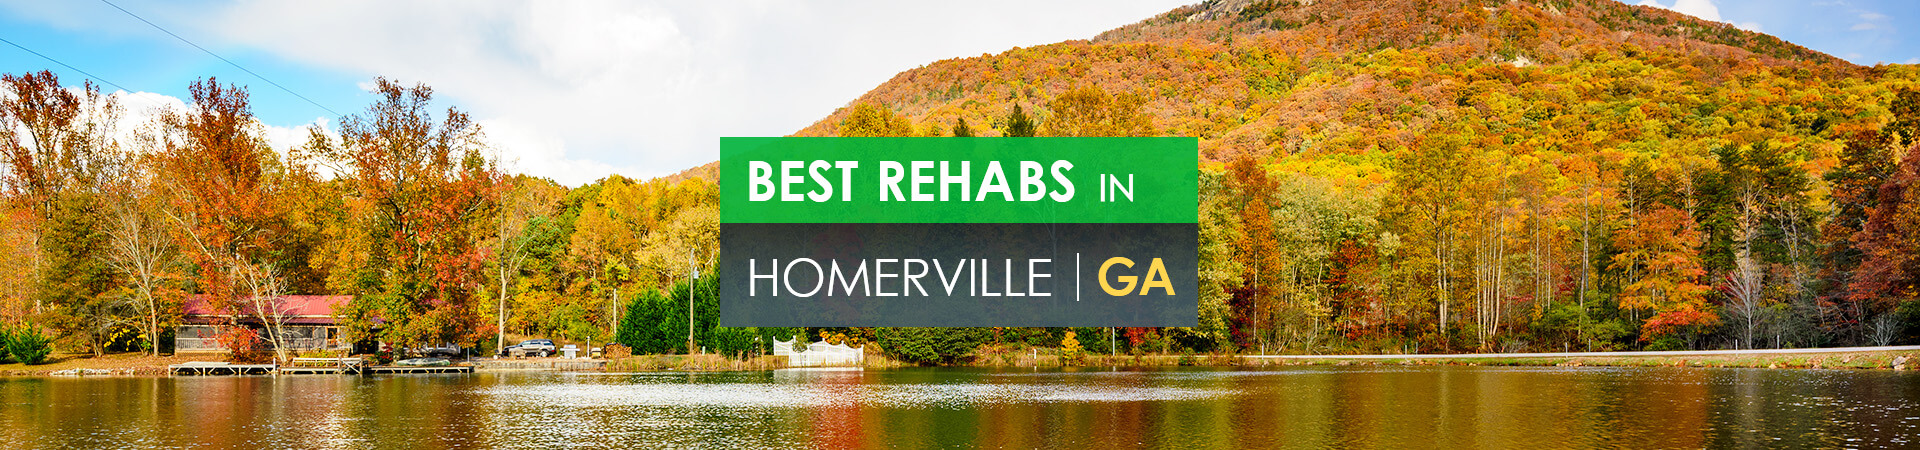 Best rehabs in Homerville, GA